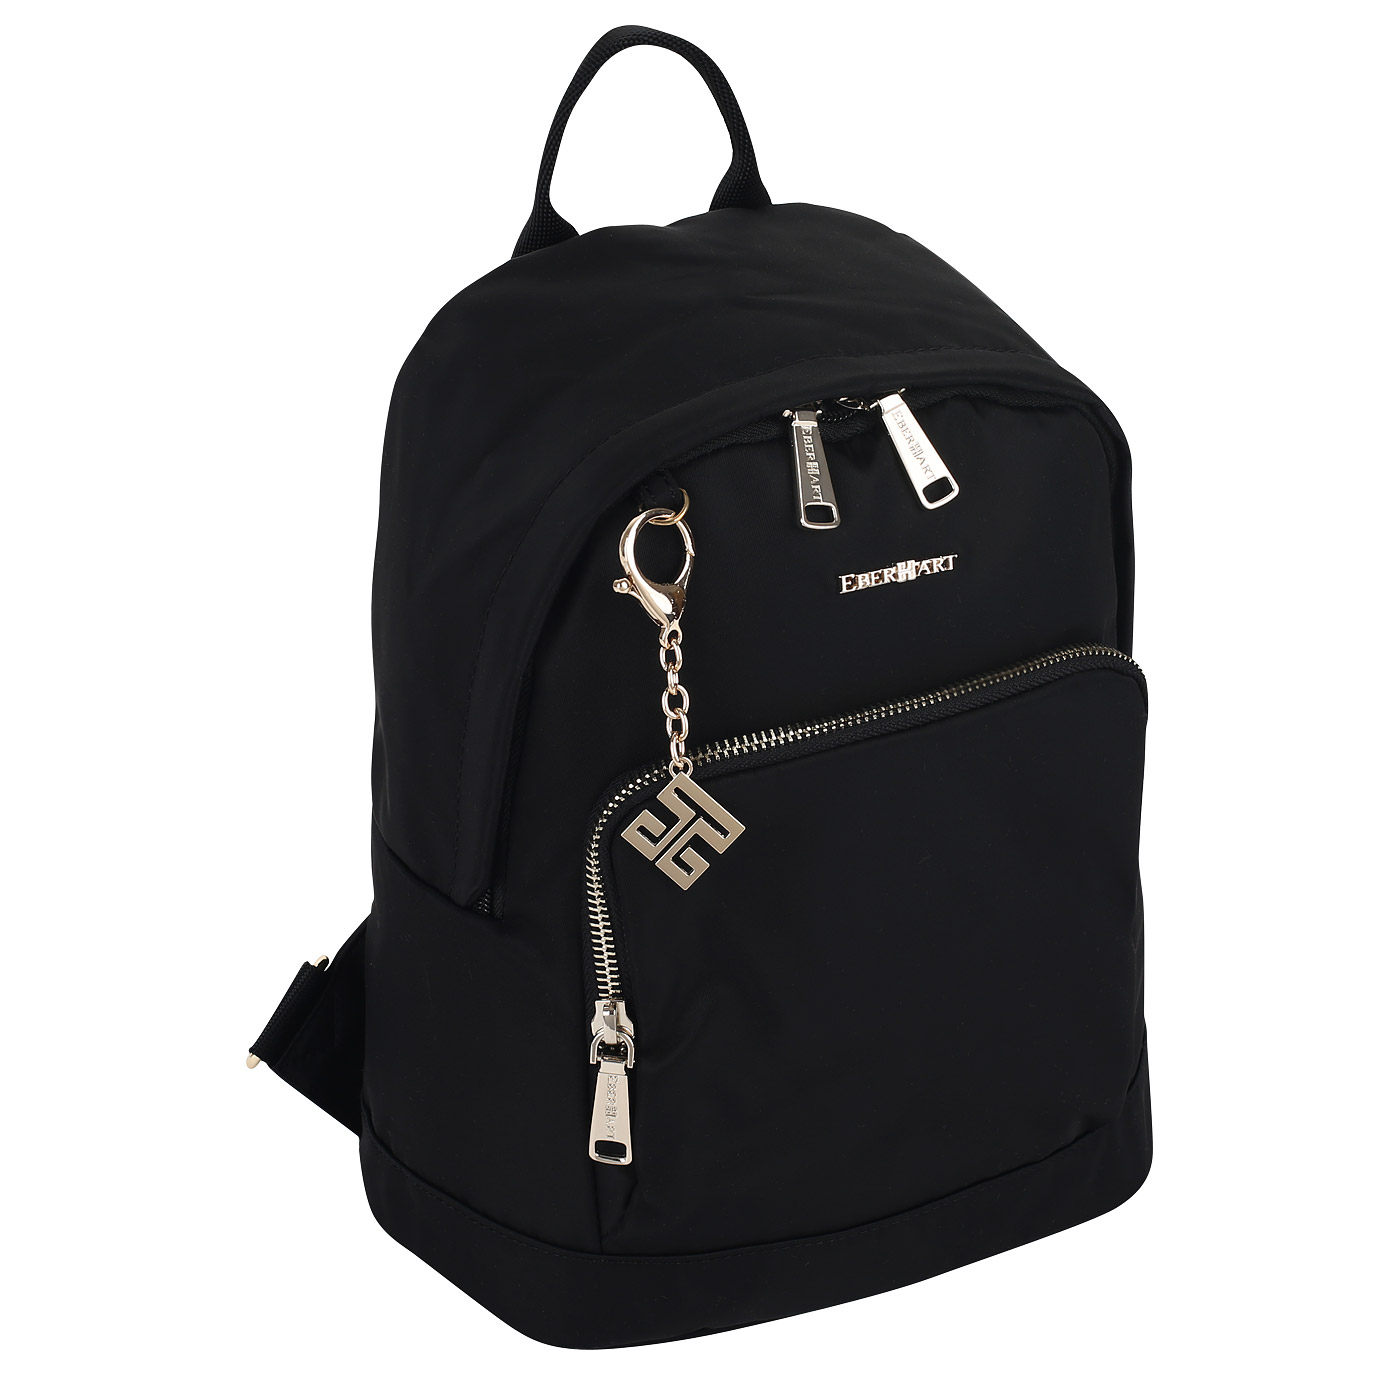 Нейлоновый рюкзак Eberhart Backpack